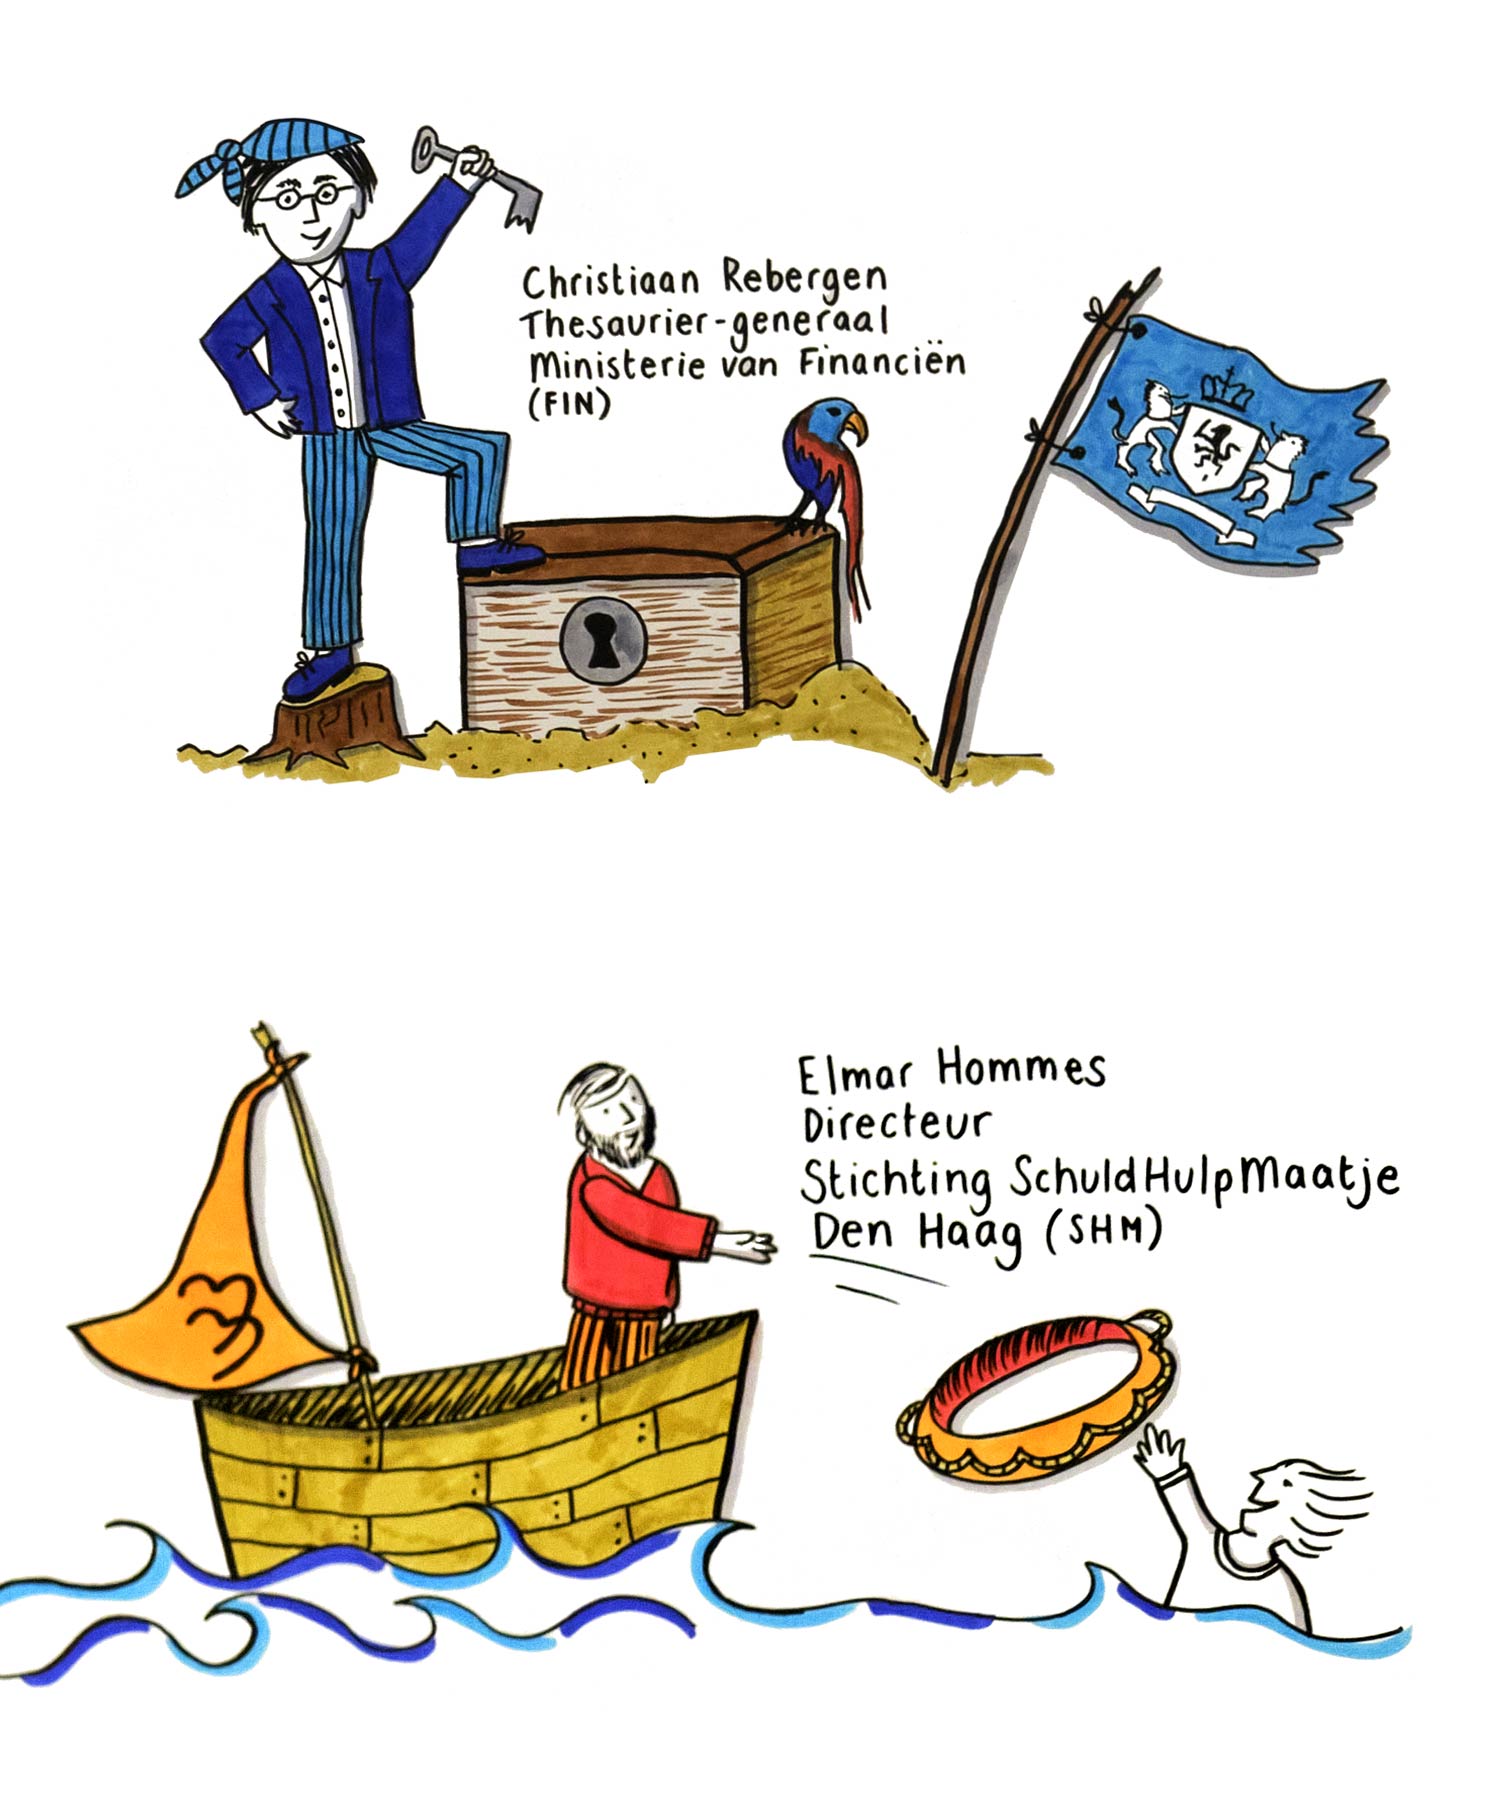 Thesaurier-generaal Christiaan Rebergen, de schatkistbewaarder van Nederland, werd als piraat afgebeeld op de visual recording. Maartje Schuurmans maakte van Elmar Hommes van SchuldHulpMaatje een man in een reddingsboot.